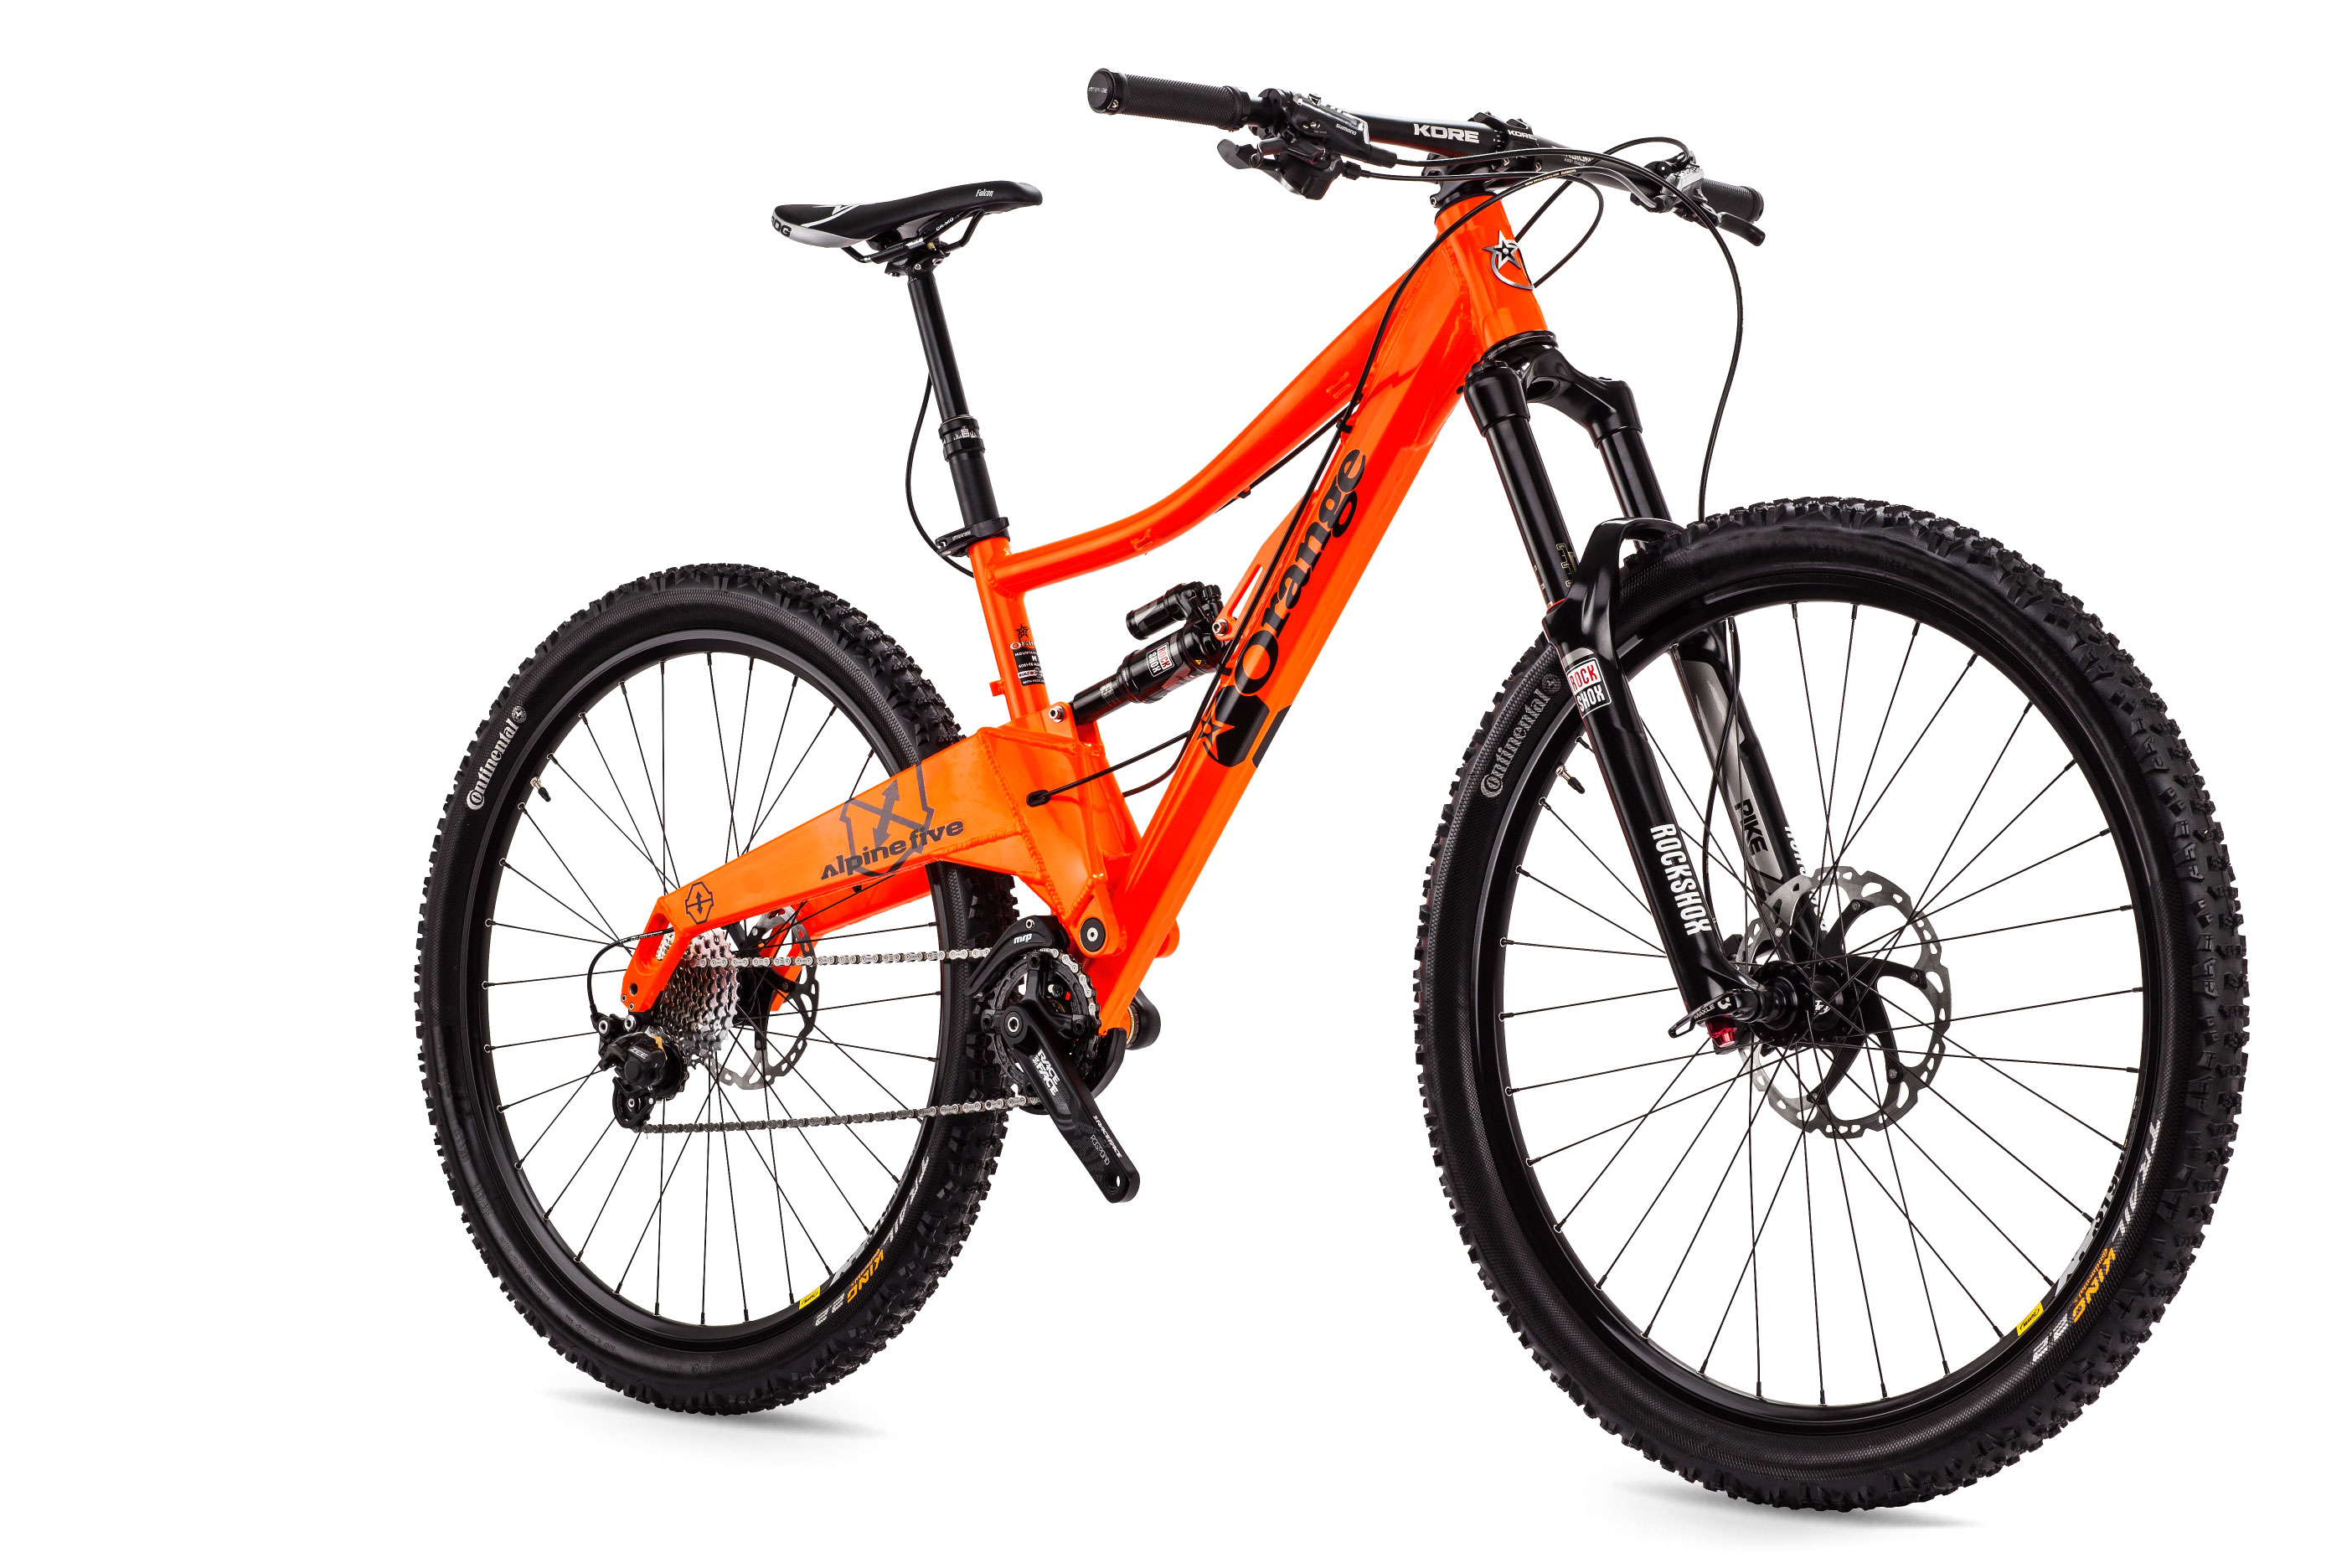 Купить велик горный. Оранжевый велосипед Mountain Bike. Велосипед Stark Маунтин байк. Skyline 01 Mountain Bike велосипед. Скоростной велосипед Orange.